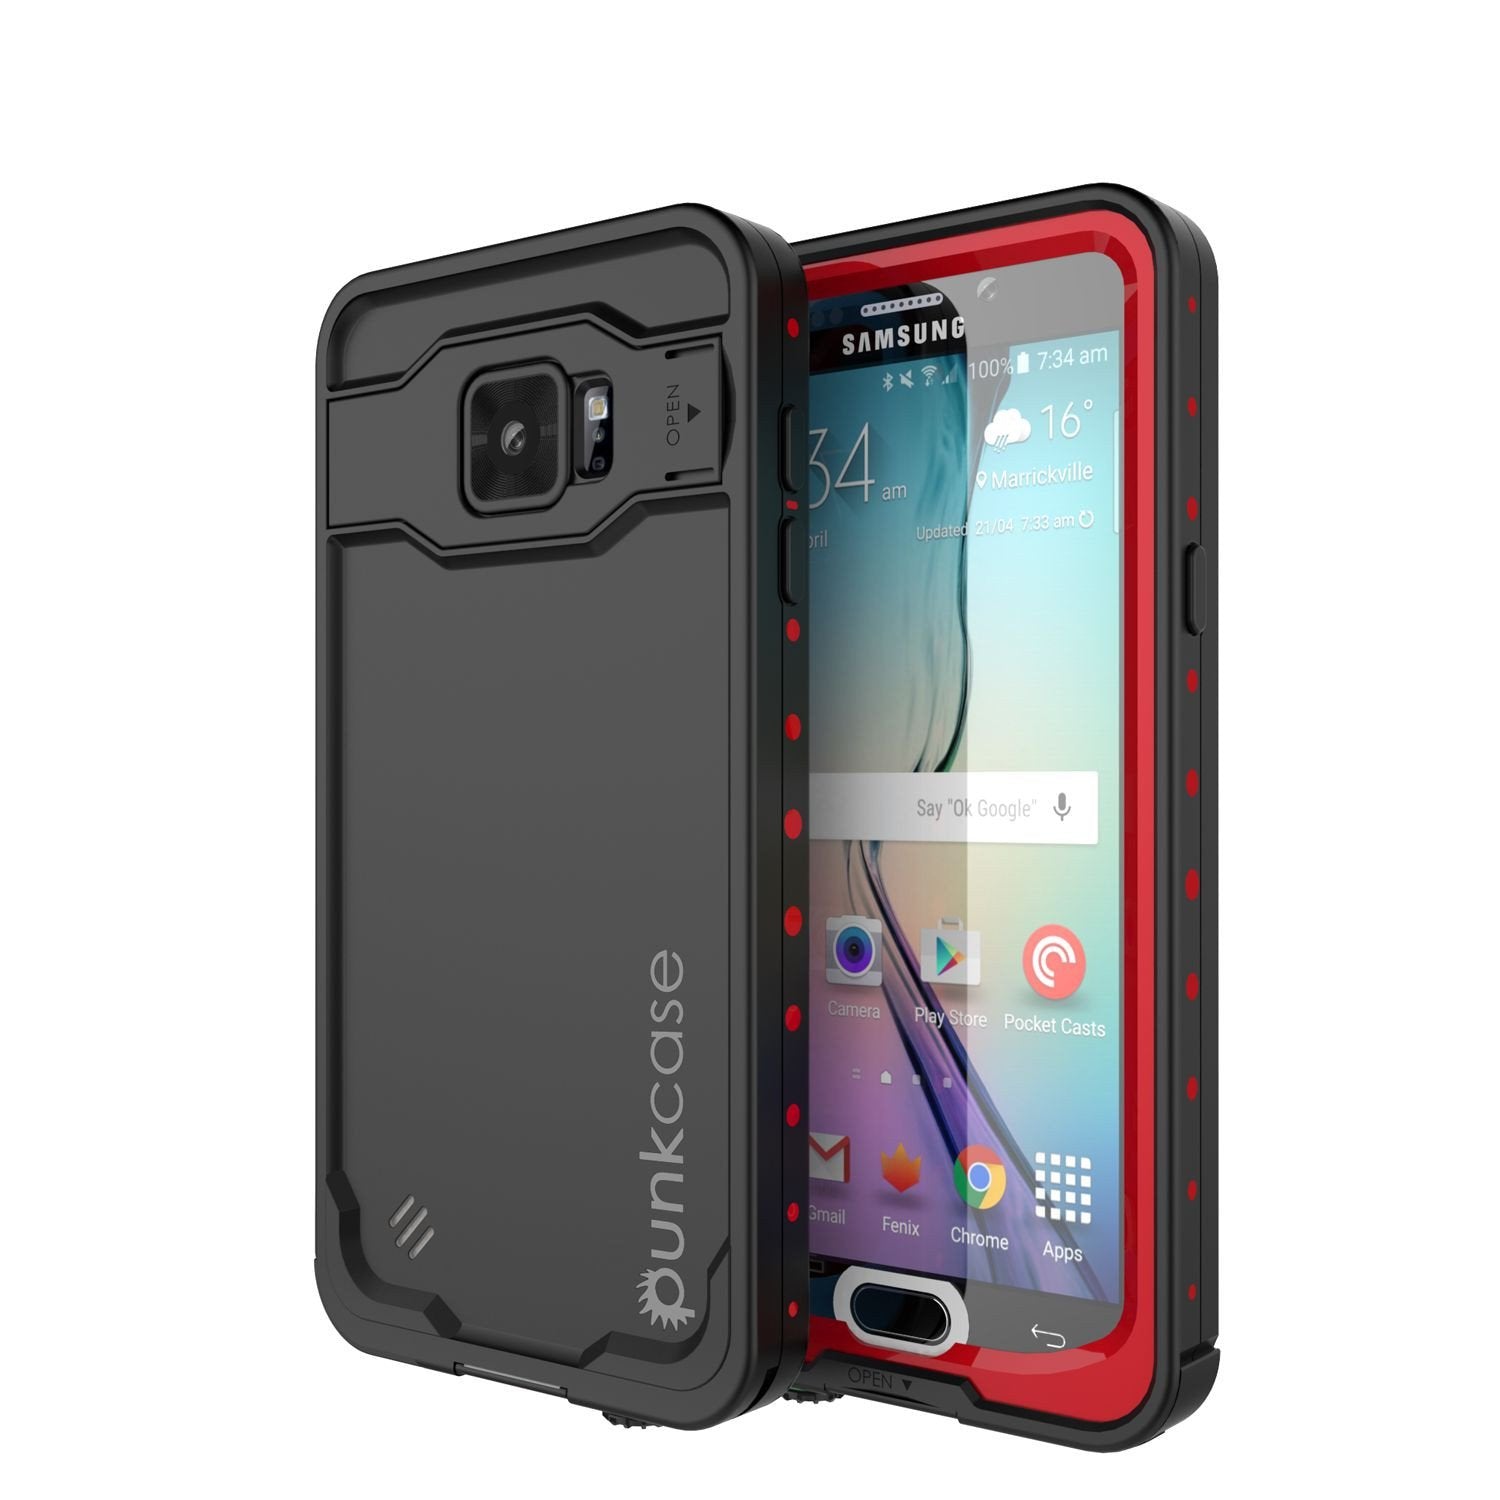 Galaxy Note 5 Waterproof Case, Punkcase StudStar Red Water/Shock/Dirt/Snow Proof | Lifetime Warranty